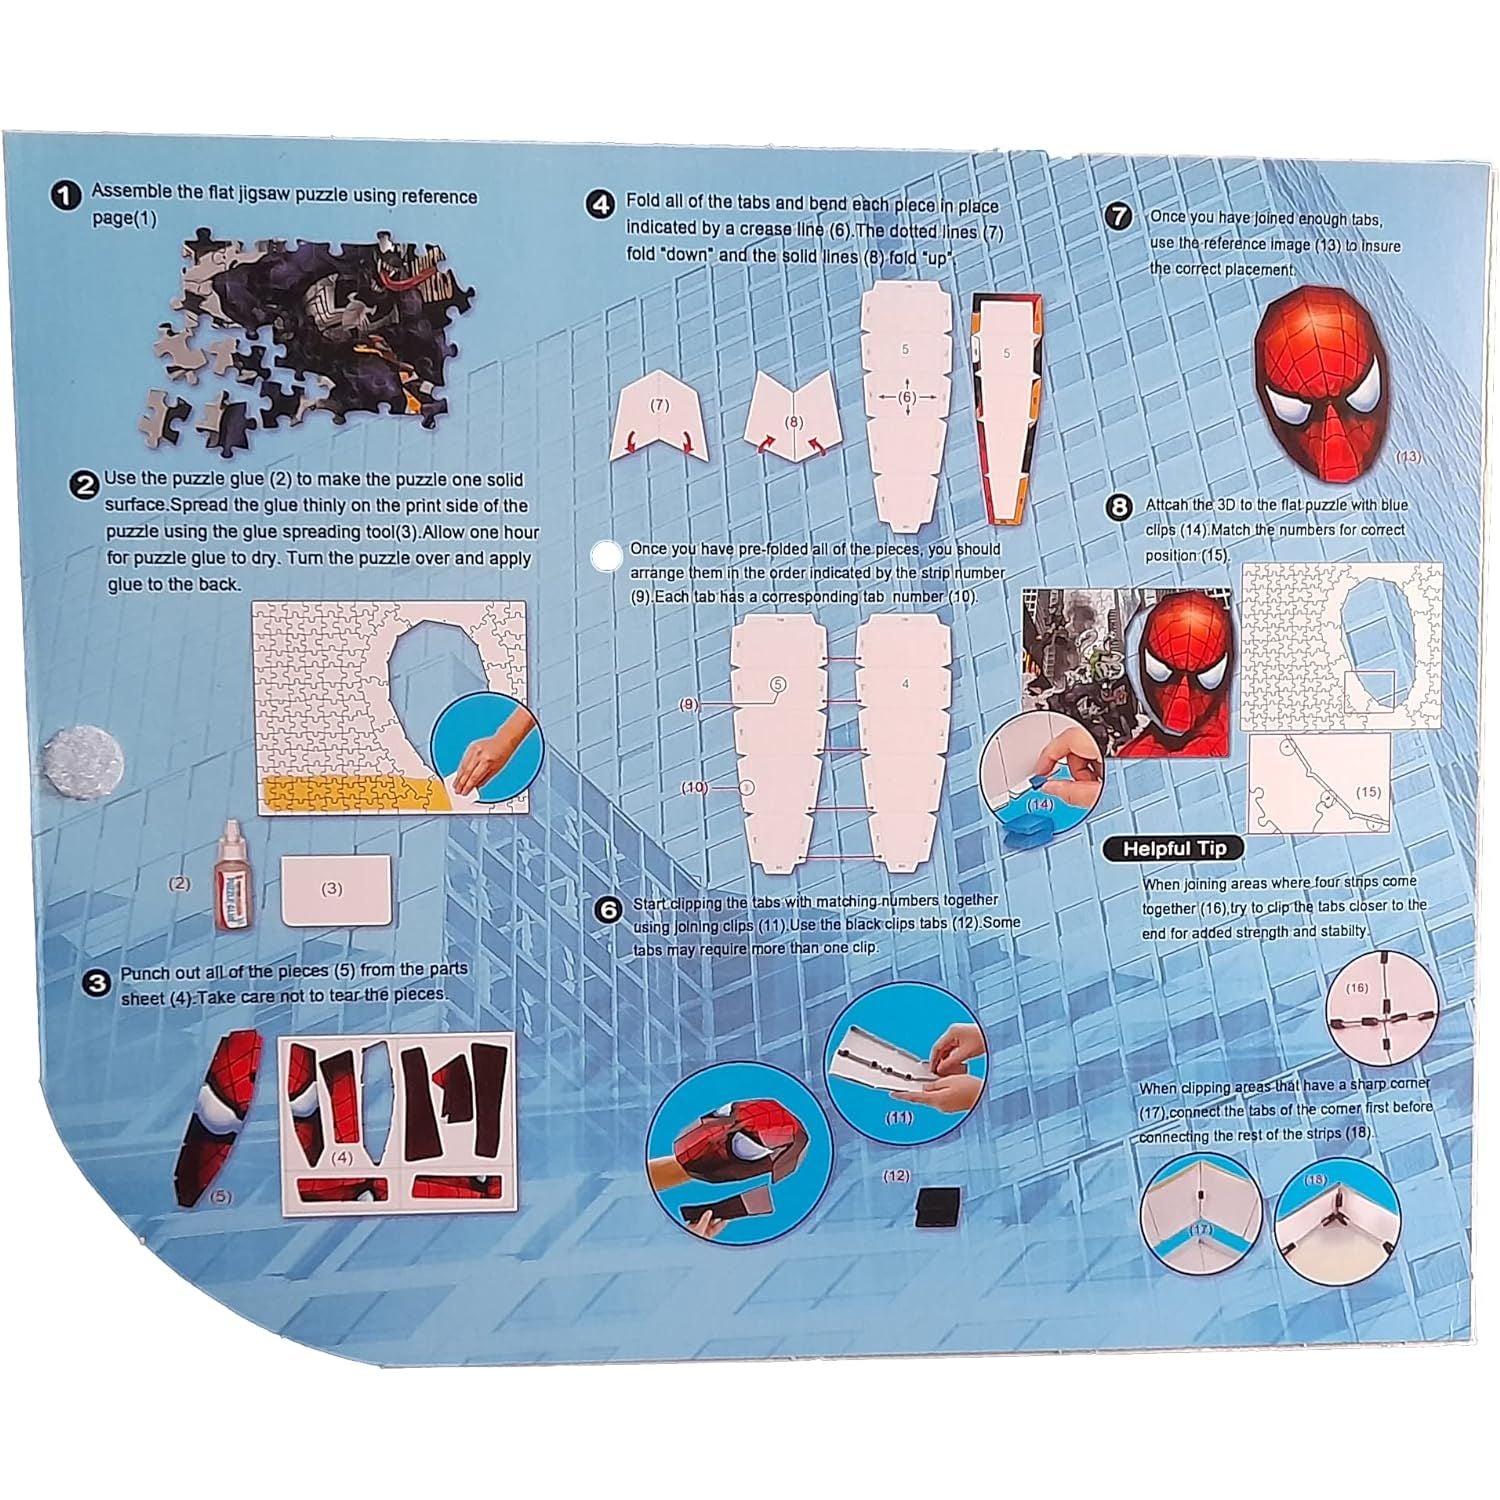 الرجل العنكبوت الحقيقي 3D اللغز كل شيء للأطفال